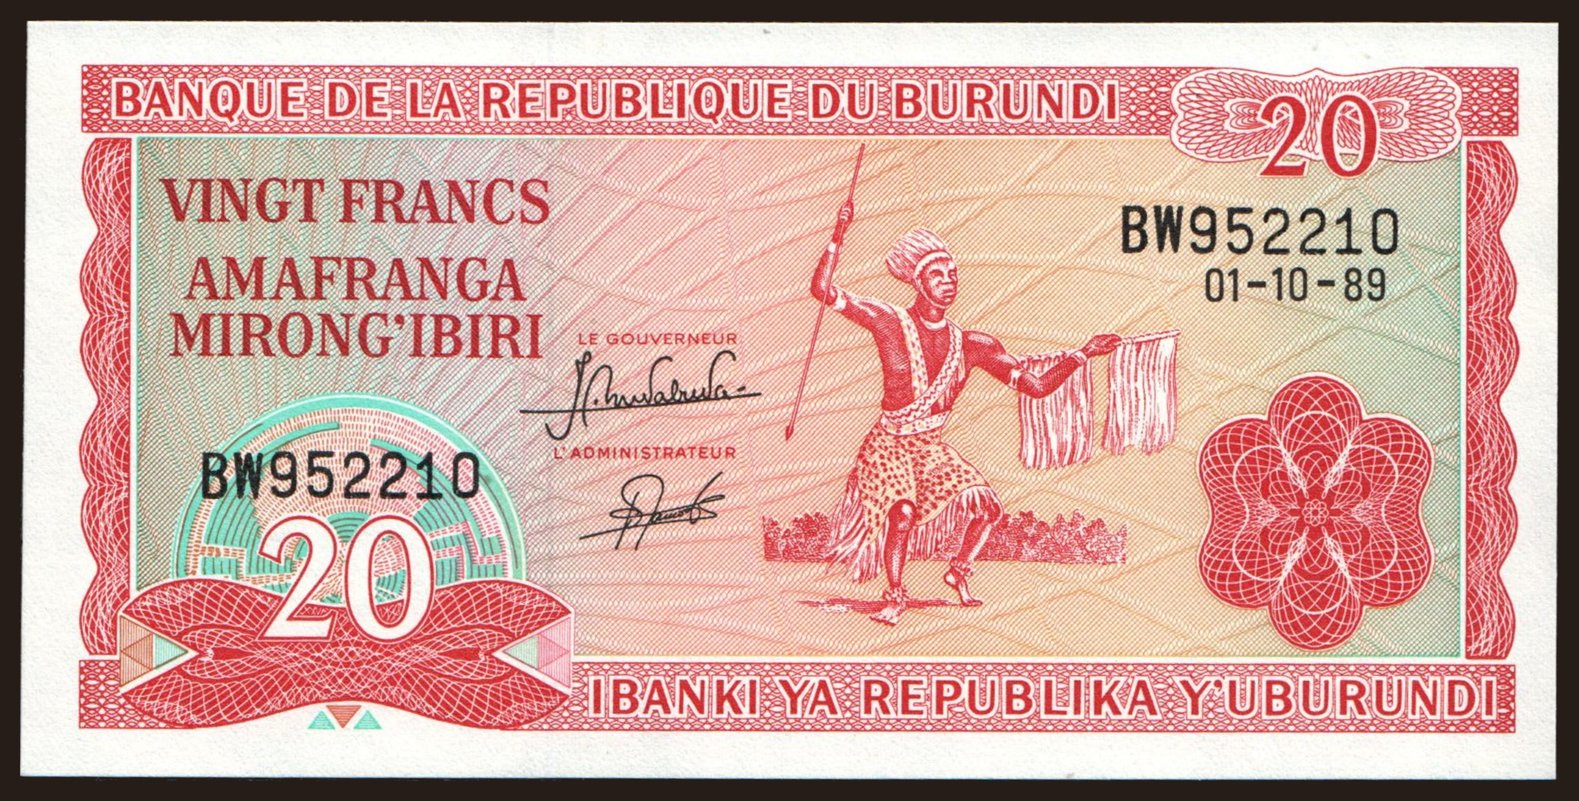 20 francs, 1989